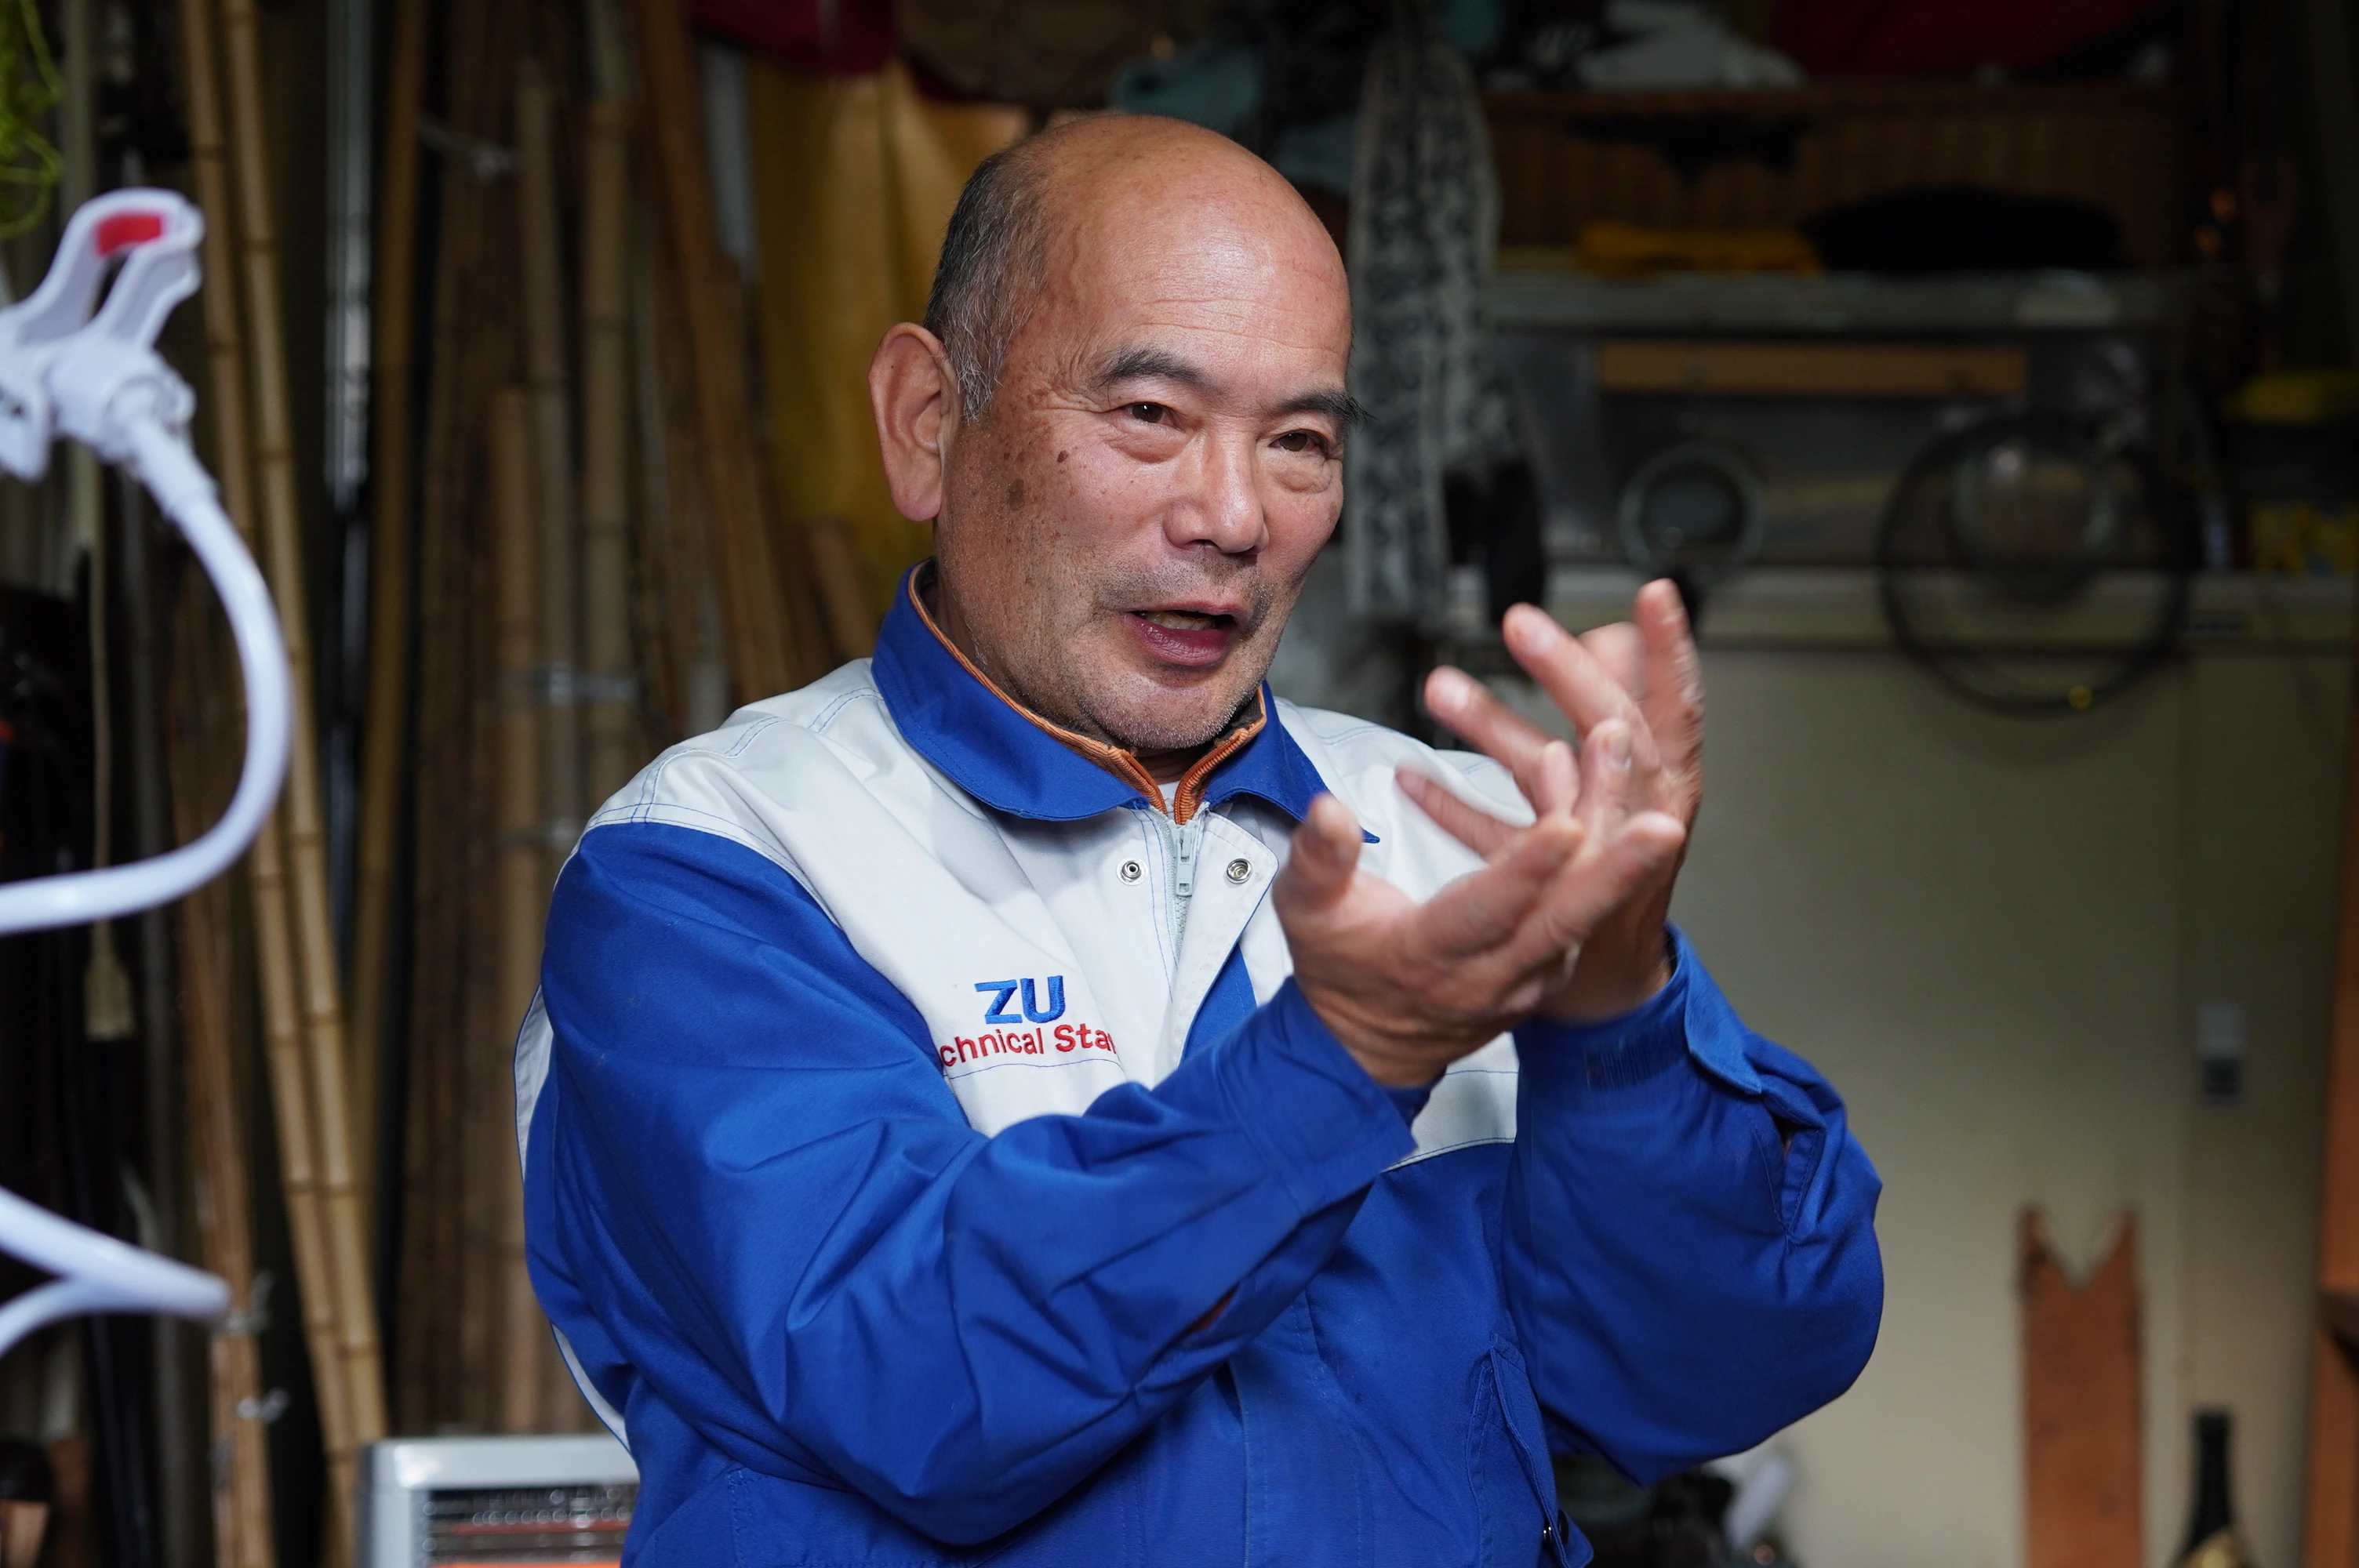 徒弟制度を経た最後の竿師と言われる、江戸和竿組合理事 竿中（SAONAKA）は1959年に千葉で生誕する。1976年に高校を中退し、千葉県松戸市の「竿かづ工房」に入門。25年間の修行を経て、師匠の引退とともに2001年に独立。2021年には江戸和竿組合の理事となり、同年3月には東京都の伝統工芸士にも認定された。本人は「遊び」と言って活動のメインにはしていないが、江戸前の伝統的な和竿の他に、ルアーフィッシング用のロッドやオールドタックルの改造など実験的な製作も行う。竿中の少年時代はバスフィッシングの黎明期、ルアーフィッシングにのめり込んだ経緯から様々な釣りに精通しており、釣りの発展を道具作りの担い手、ファンの立場の両側面から見てきた。これが竿中の柔軟な発想や、製作意欲の源泉である。